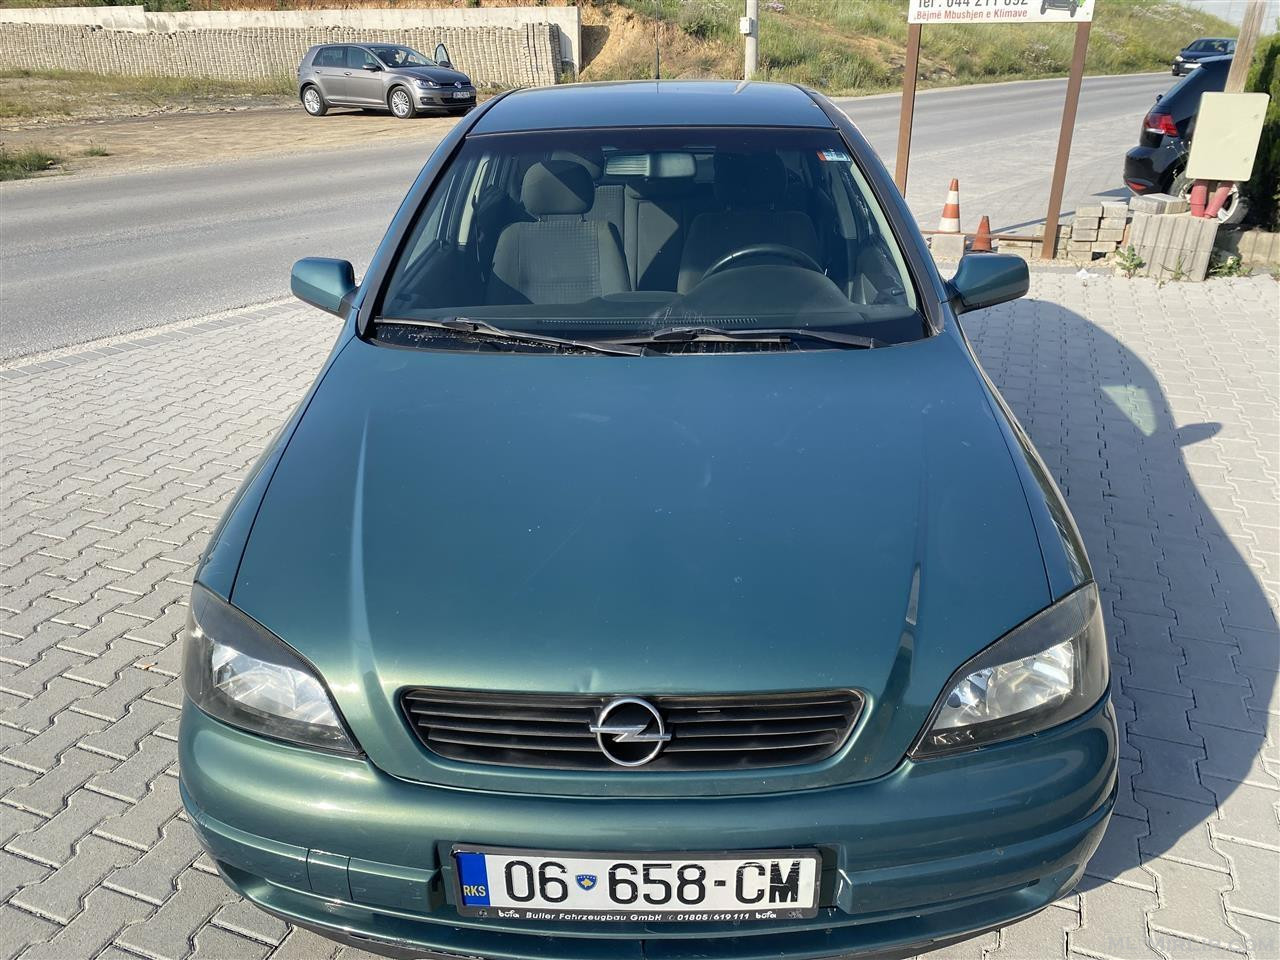 Opel astra 1.7 2004 dizel